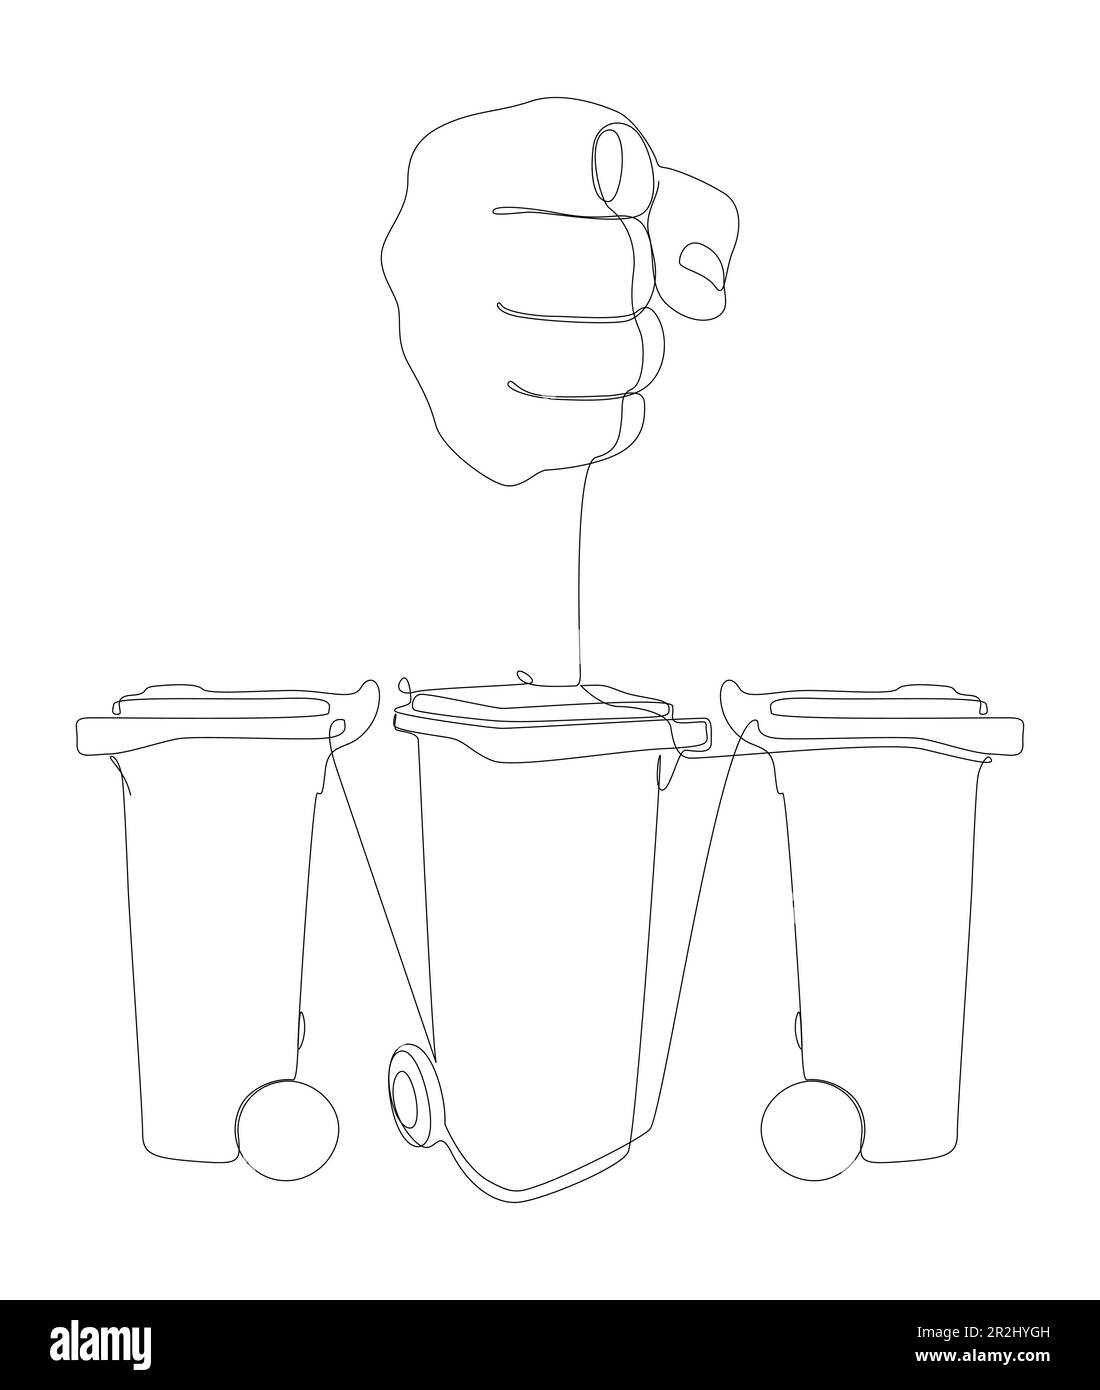 Eine durchgehende Handbewegung mit Mülleimer. Vektorkonzept zur Darstellung dünner Linien. Kontur Zeichnen kreativer Ideen. Stock Vektor